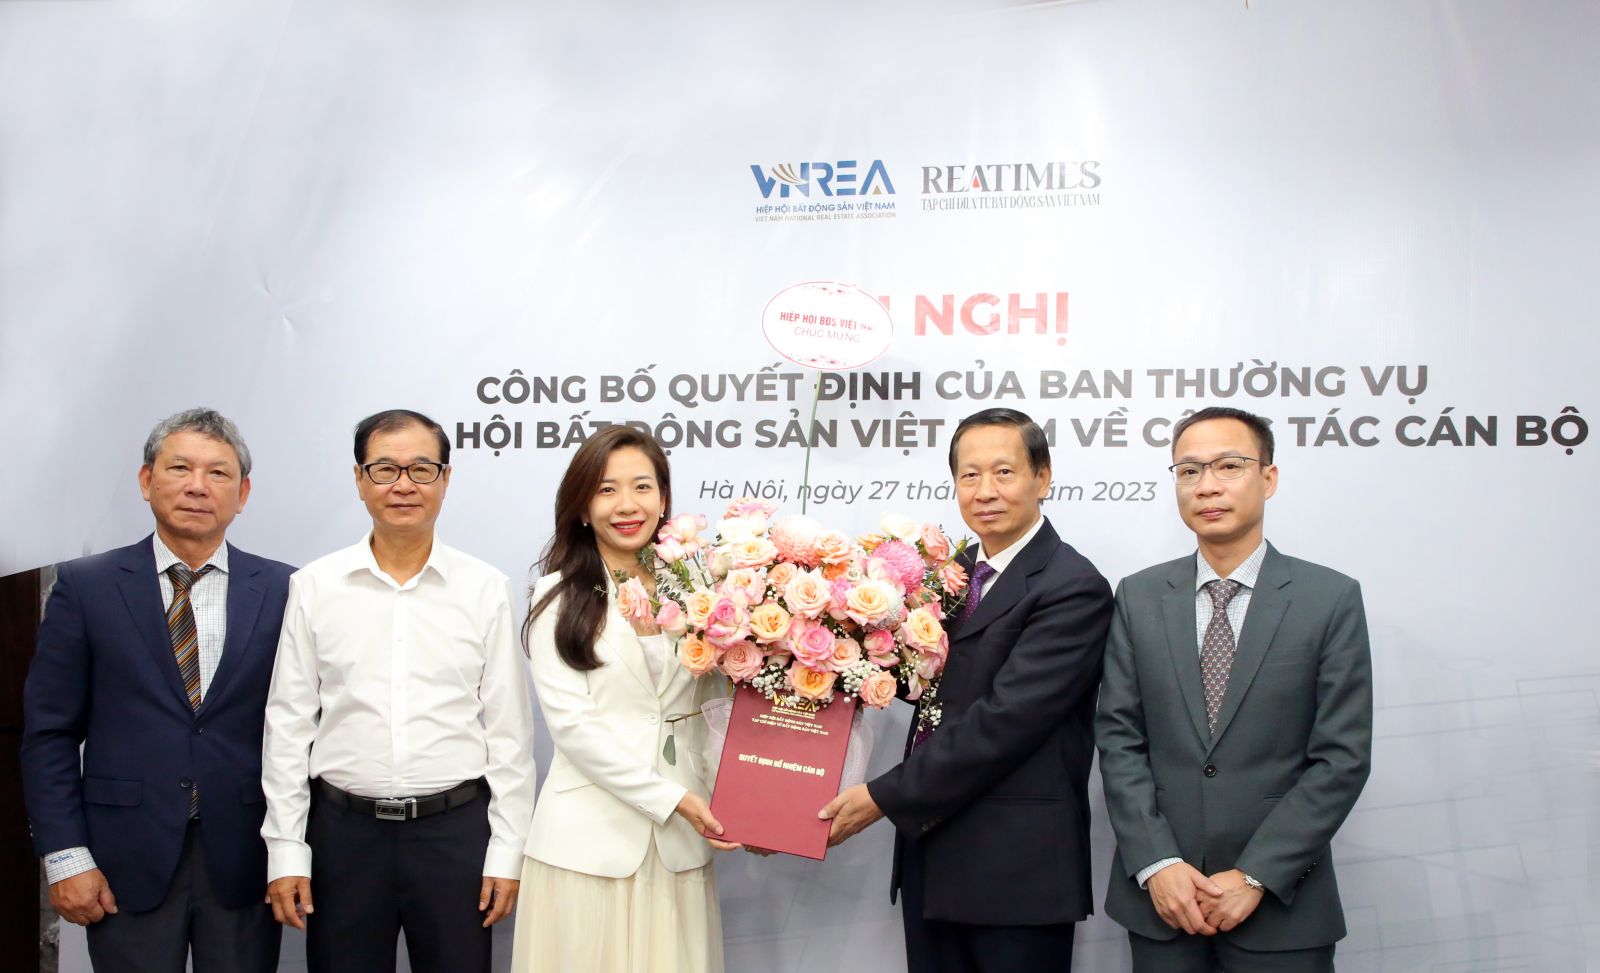 Nhà báo Trần Minh Huệ giữ chức Uỷ viên Ban Biên tập Tạp chí điện tử Bất động sản Việt Nam (Reatimes)- Ảnh 2.